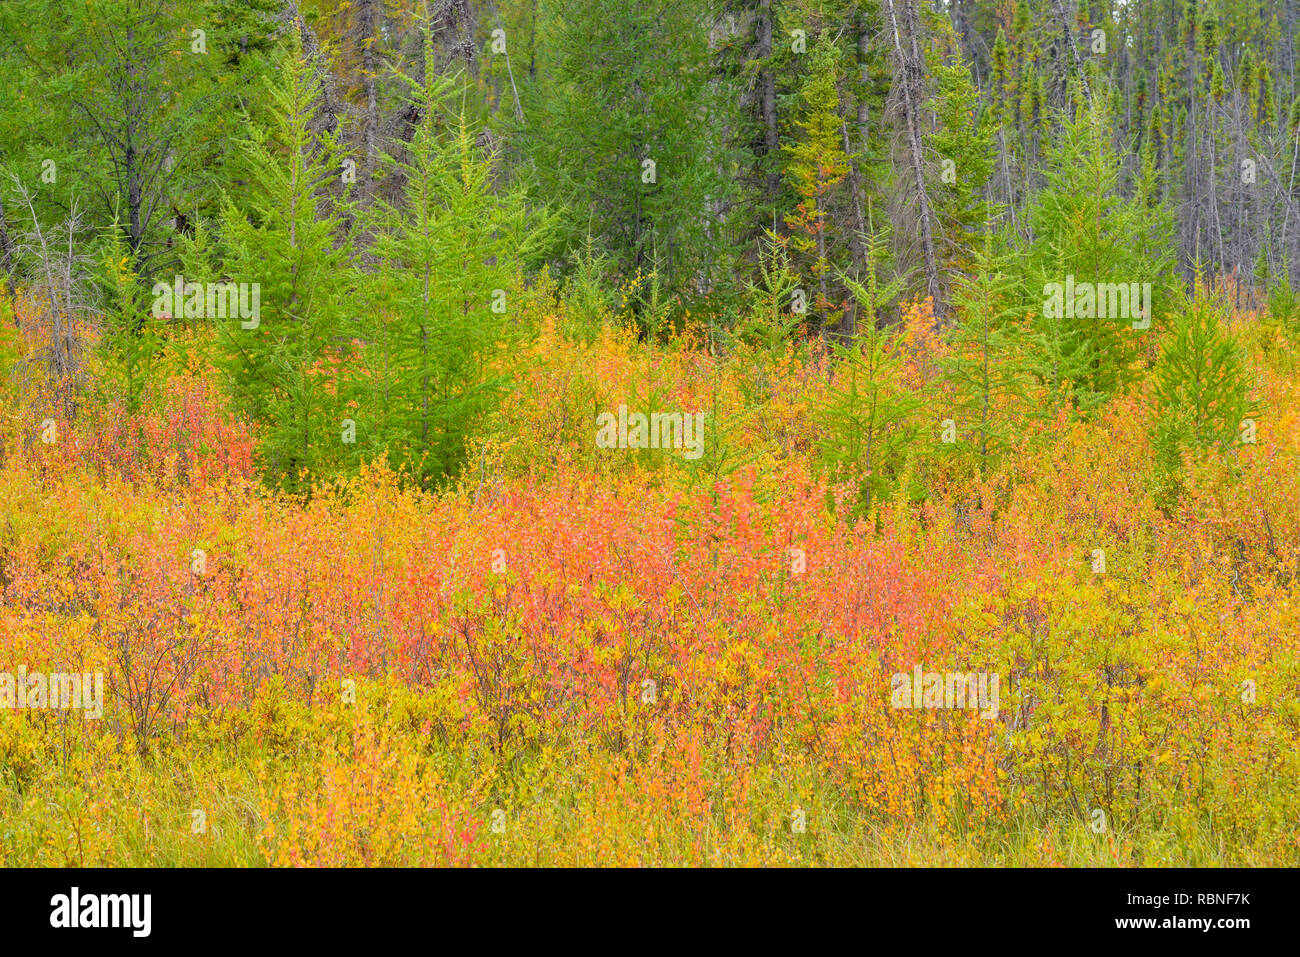 Colores del Otoño en un humedal (abedules enanos y alerces), cerca del río de heno (Hwy 5/6 intersección), Territorios del Noroeste, Canadá Foto de stock